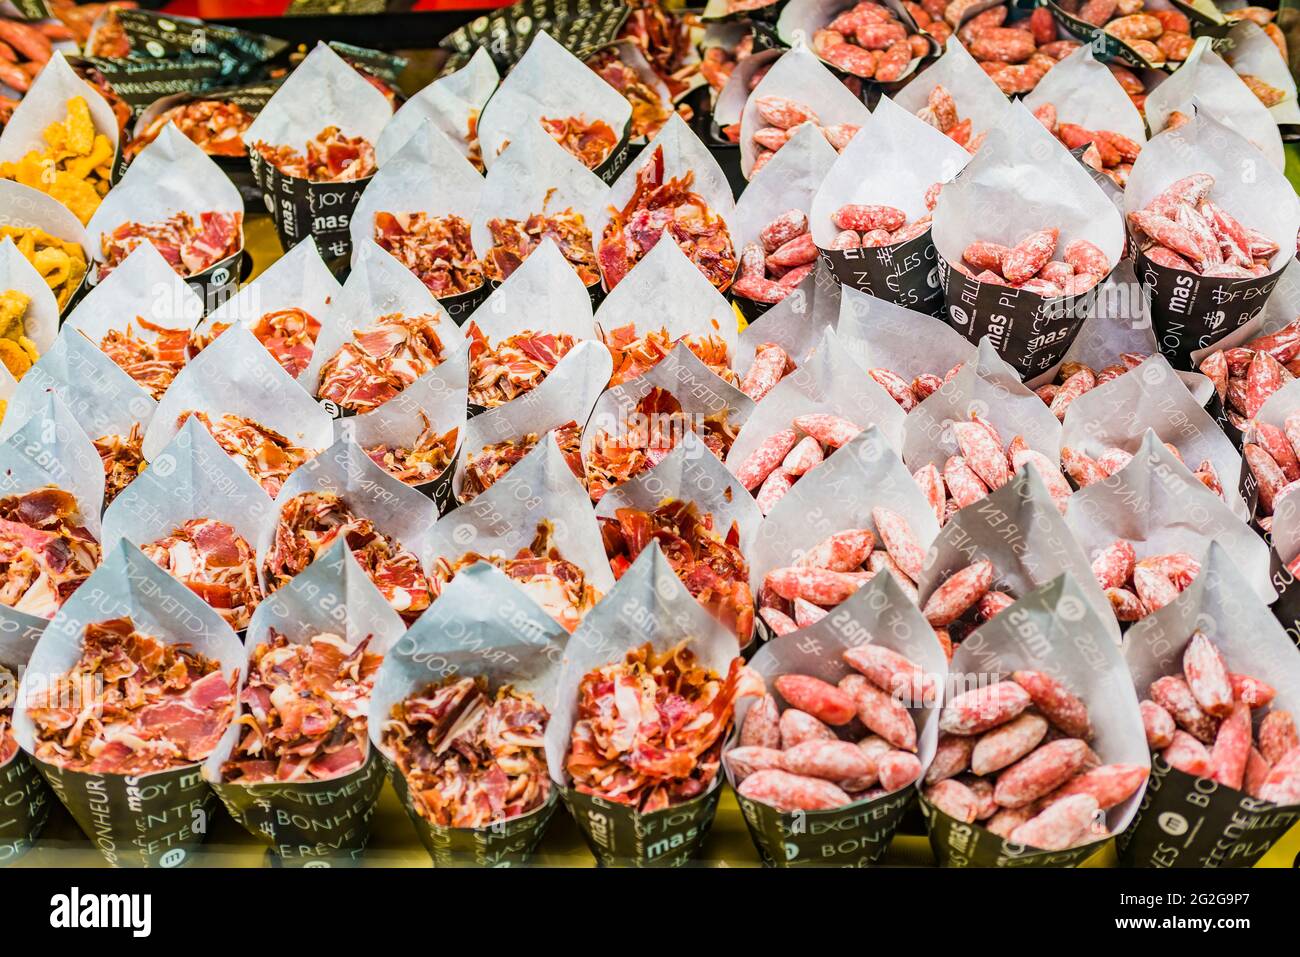 Kleine Zapfen, die ausgehärtete Schweinefleischprodukte enthalten. Spanische Tapas. Der Markt von San Miguel, Mercado de San Miguel, ist eine Markthalle in Madrid. Ori Stockfoto